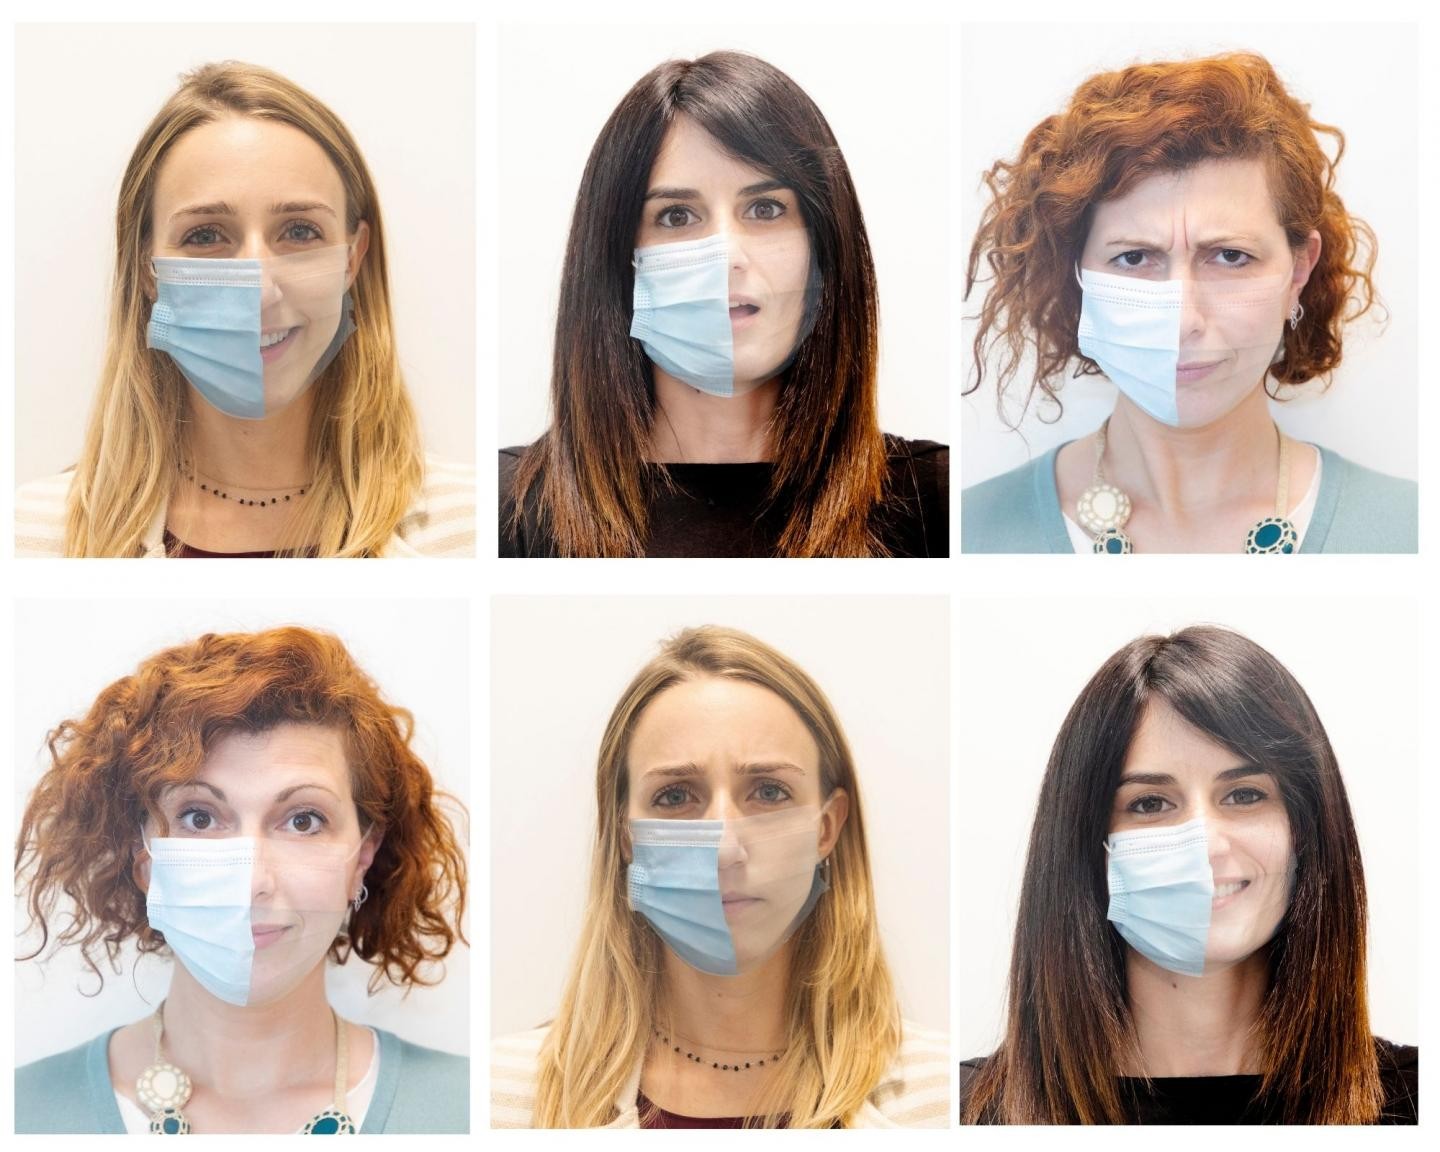 Estudo mostra que crianças têm dificuldade em entender as expressões faciais de pessoas que usam máscaras (Foto: L.Taverna/IIT-Istituto Italiano di Tecnologia)